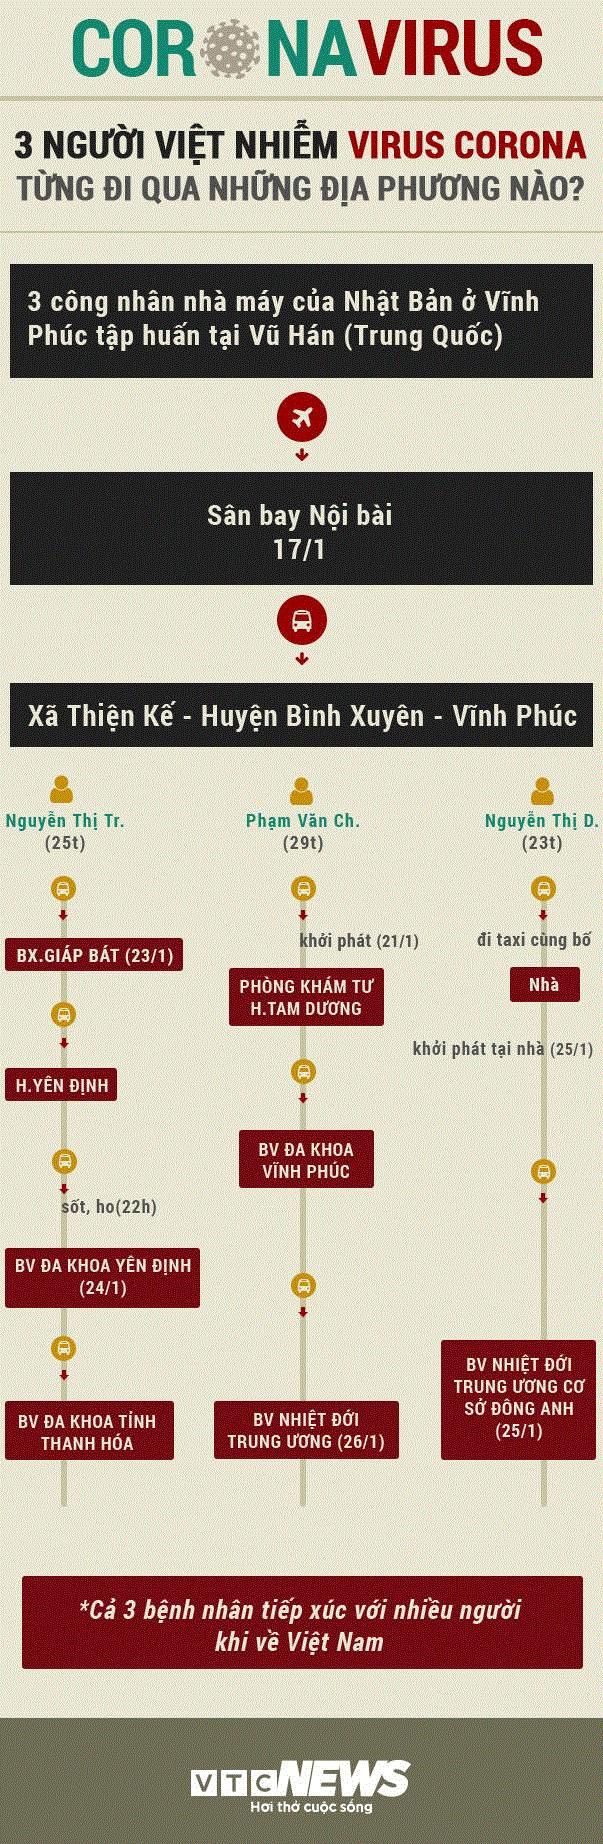 Infographic: Đường di chuyển của 3 người Việt Nam nhiễm virus corona từ Vũ Hán - Ảnh 1.